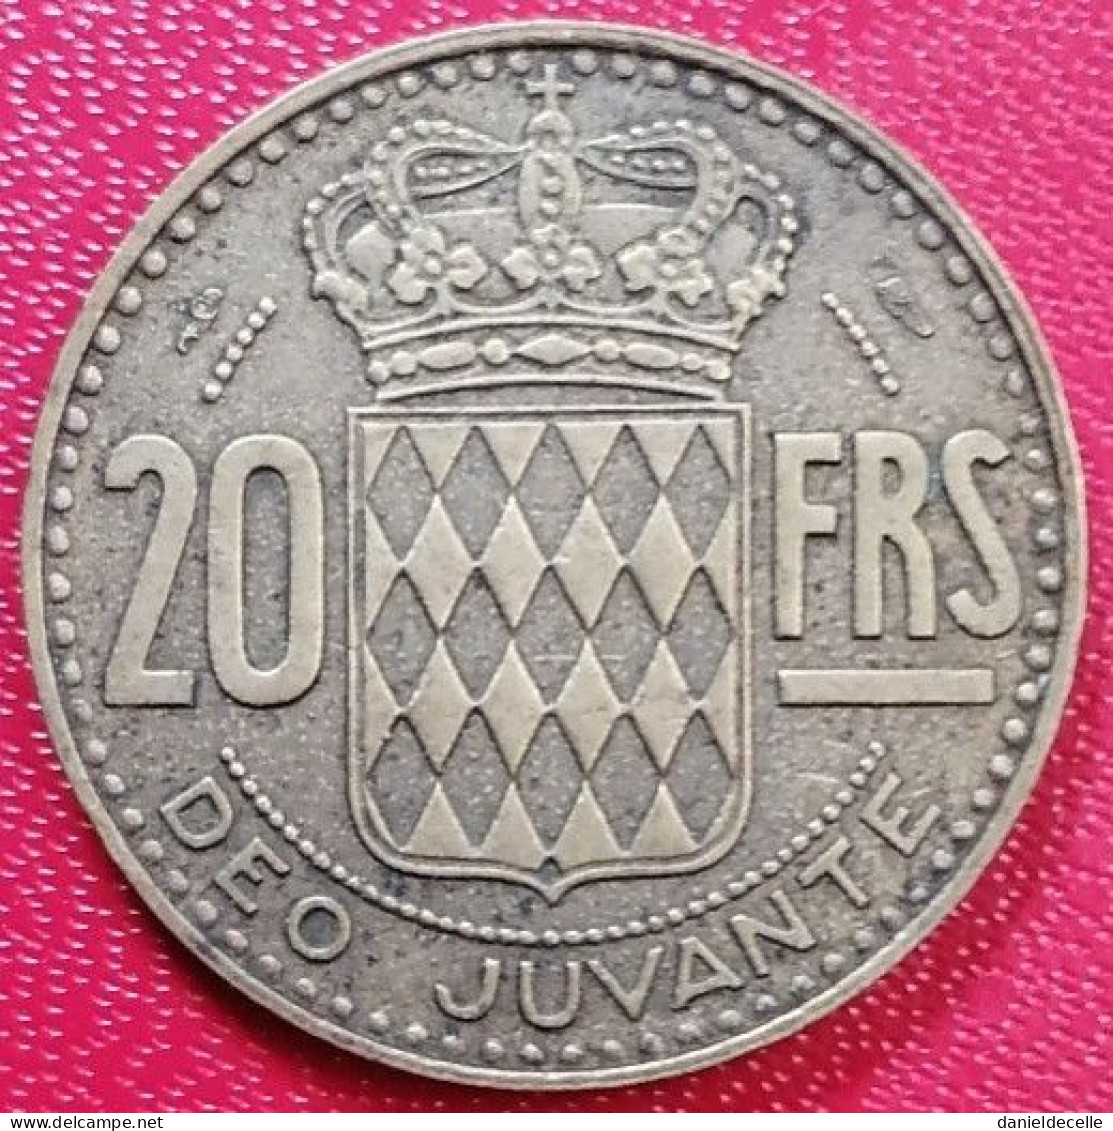 20 Francs 1950 Monaco (TTB) - 1949-1956 Anciens Francs